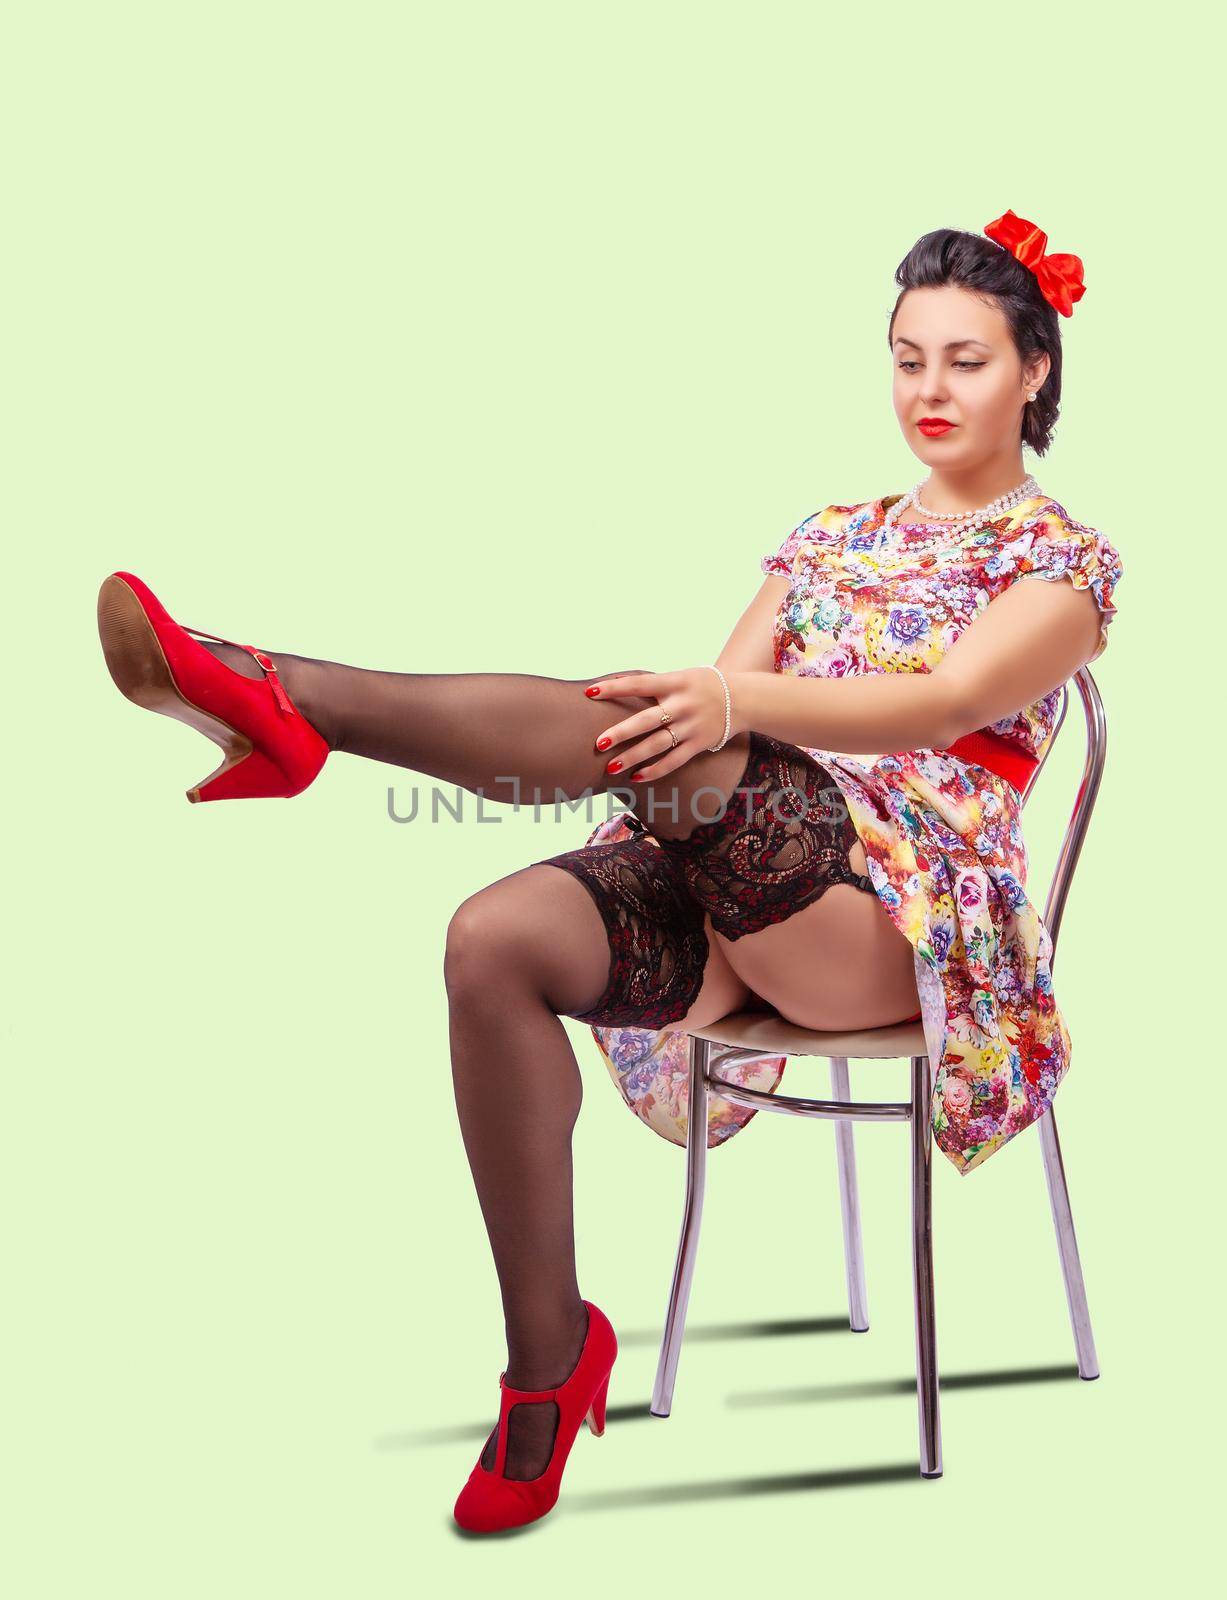 woman straightens her stocking by raddnatt